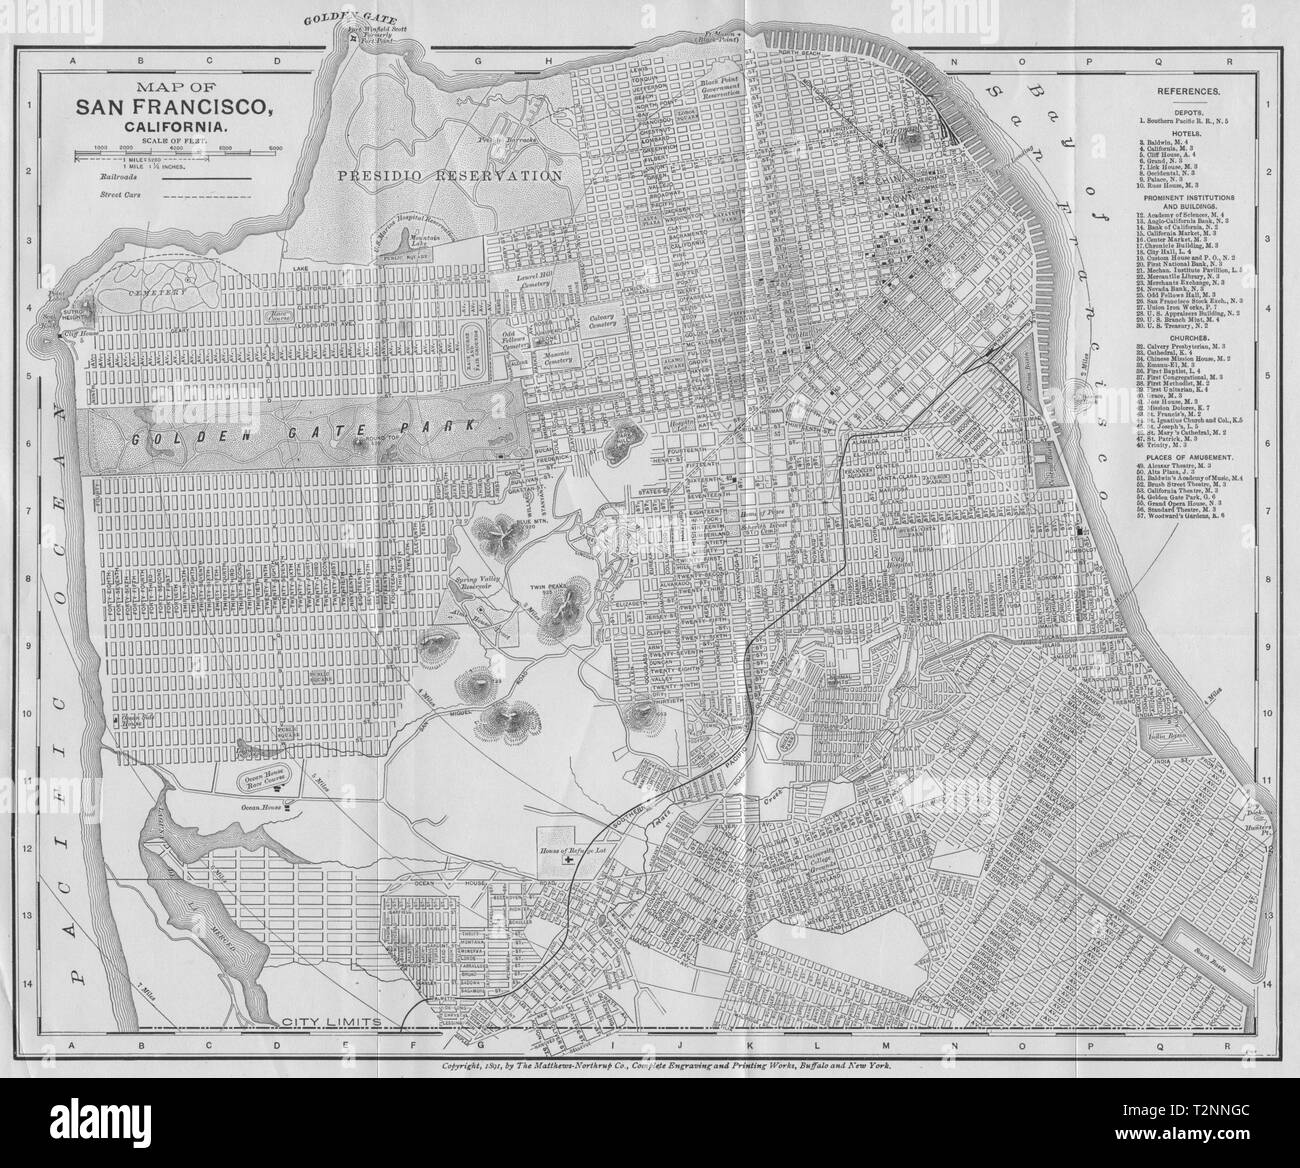 SAN FRANCISCO, CALIFORNIA. Città mappa città plan 1893 antica grafico Foto Stock